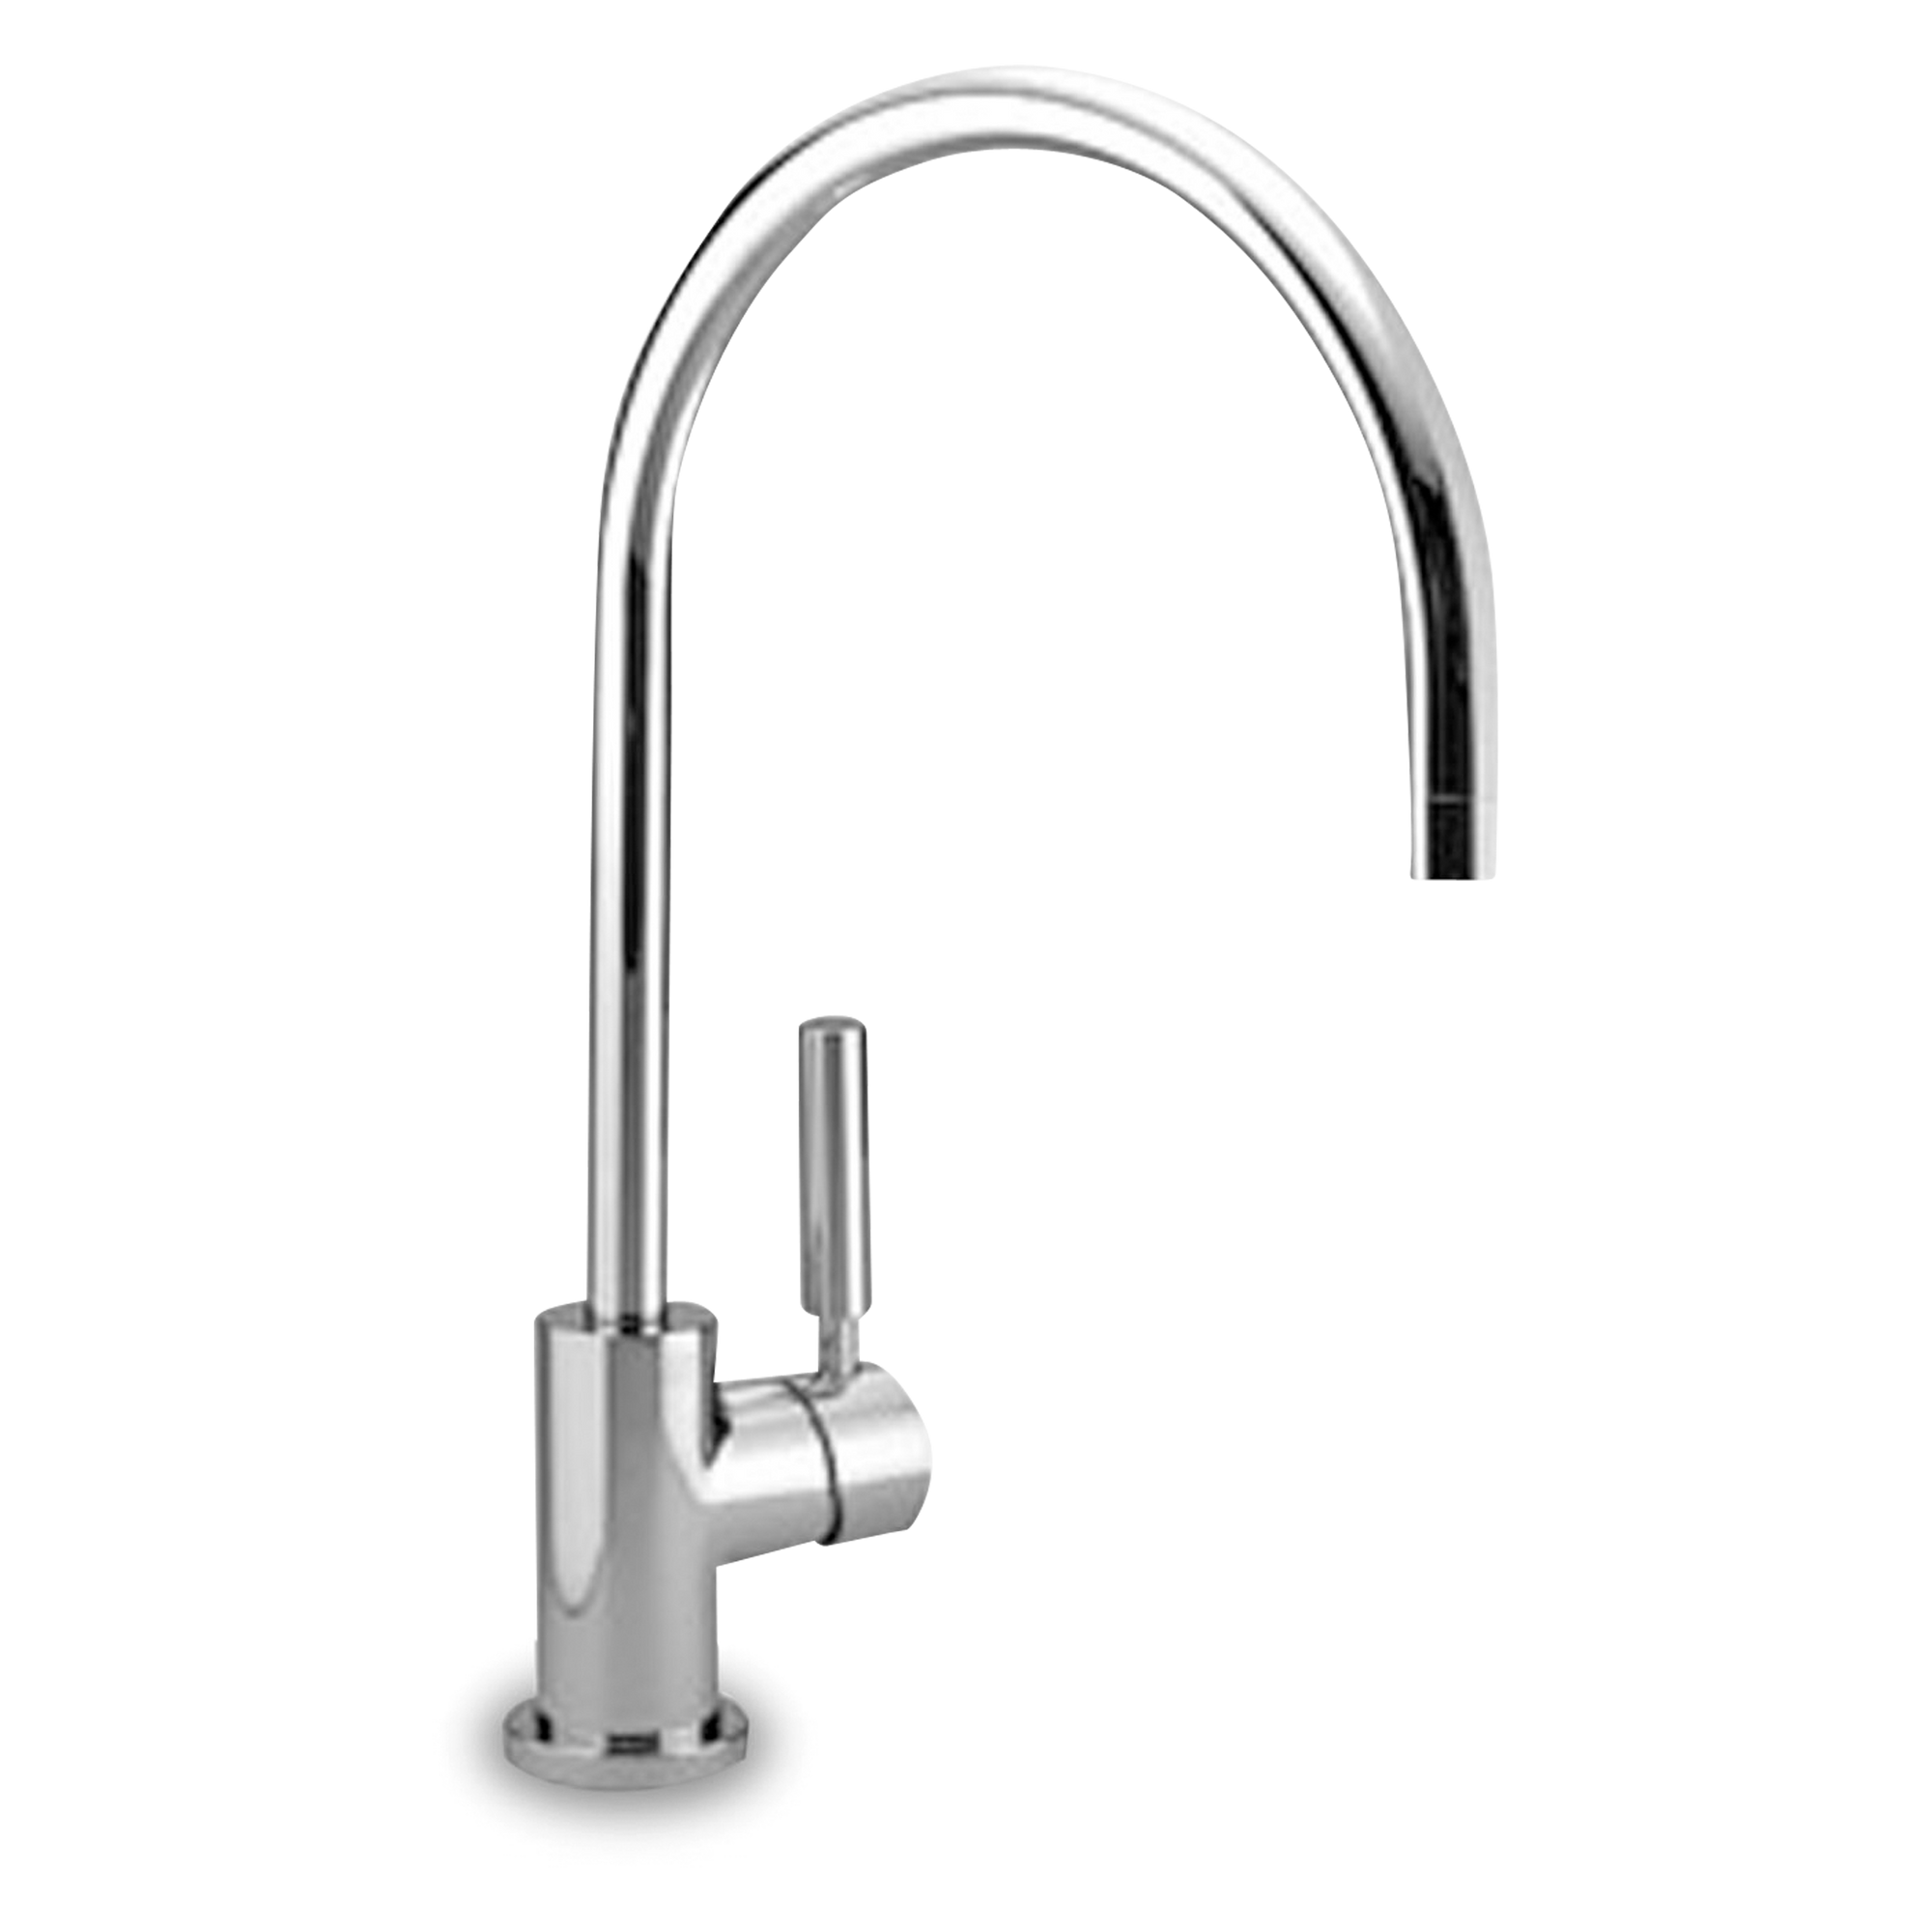 A sleek, single-hole, polished chrome faucet.